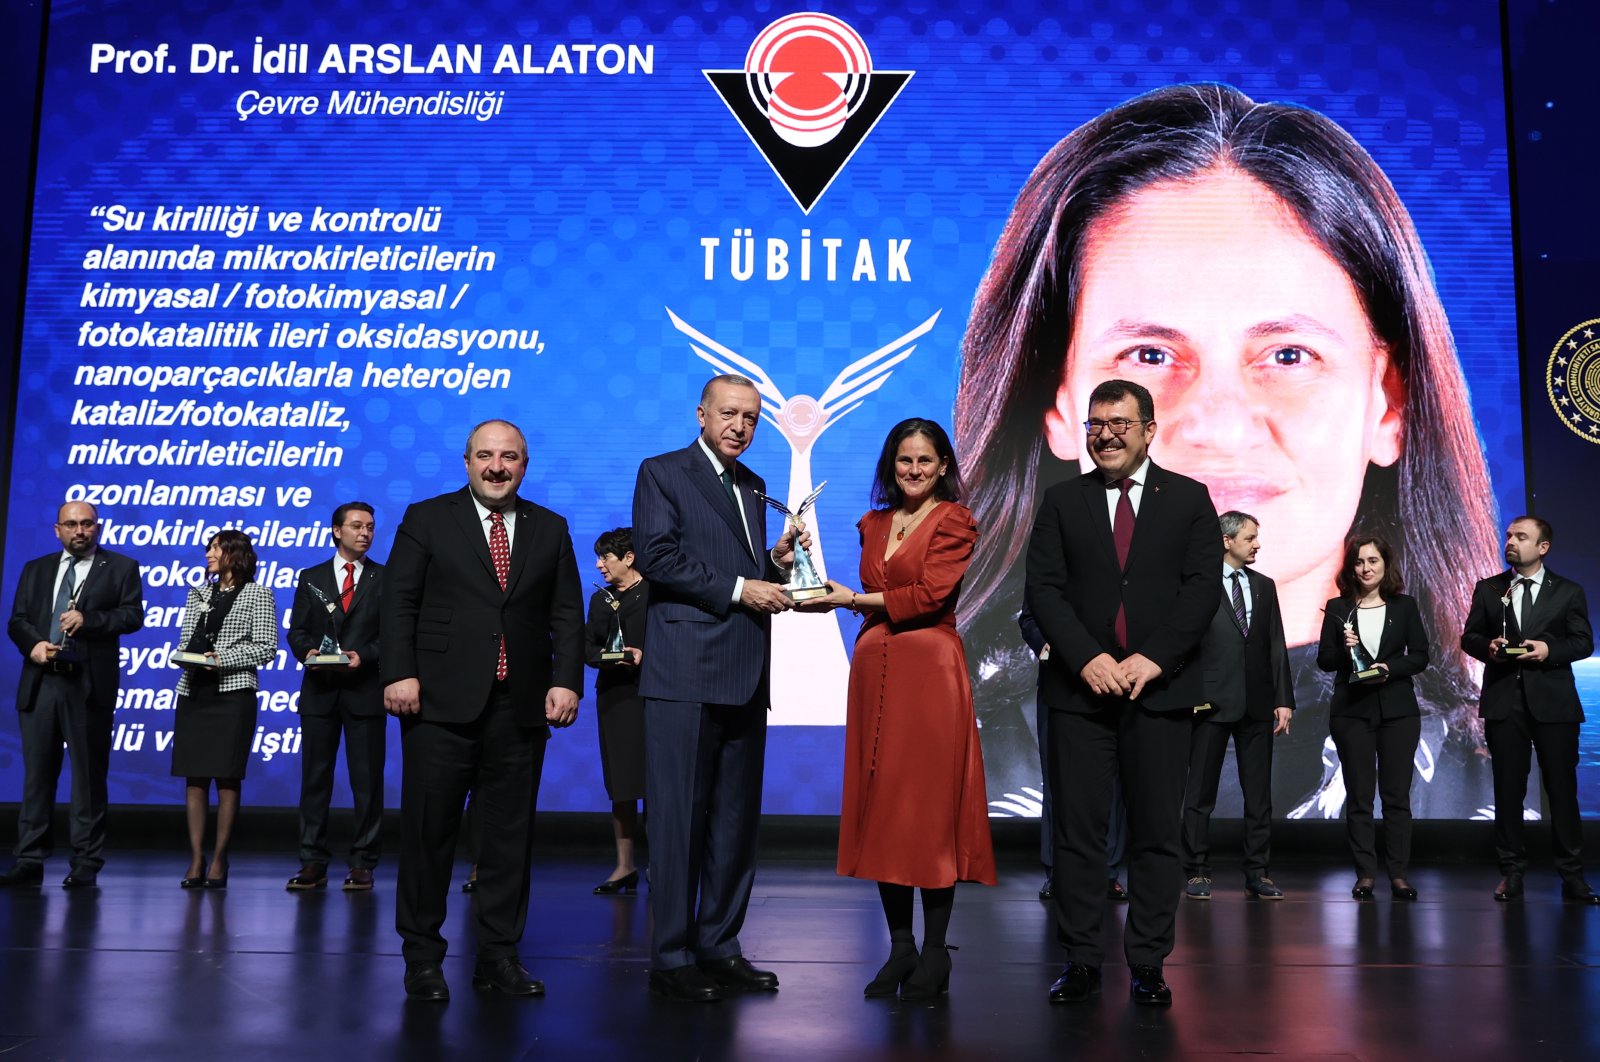 Penghargaan sains utama Turki mengakui bakat lokal dan asing